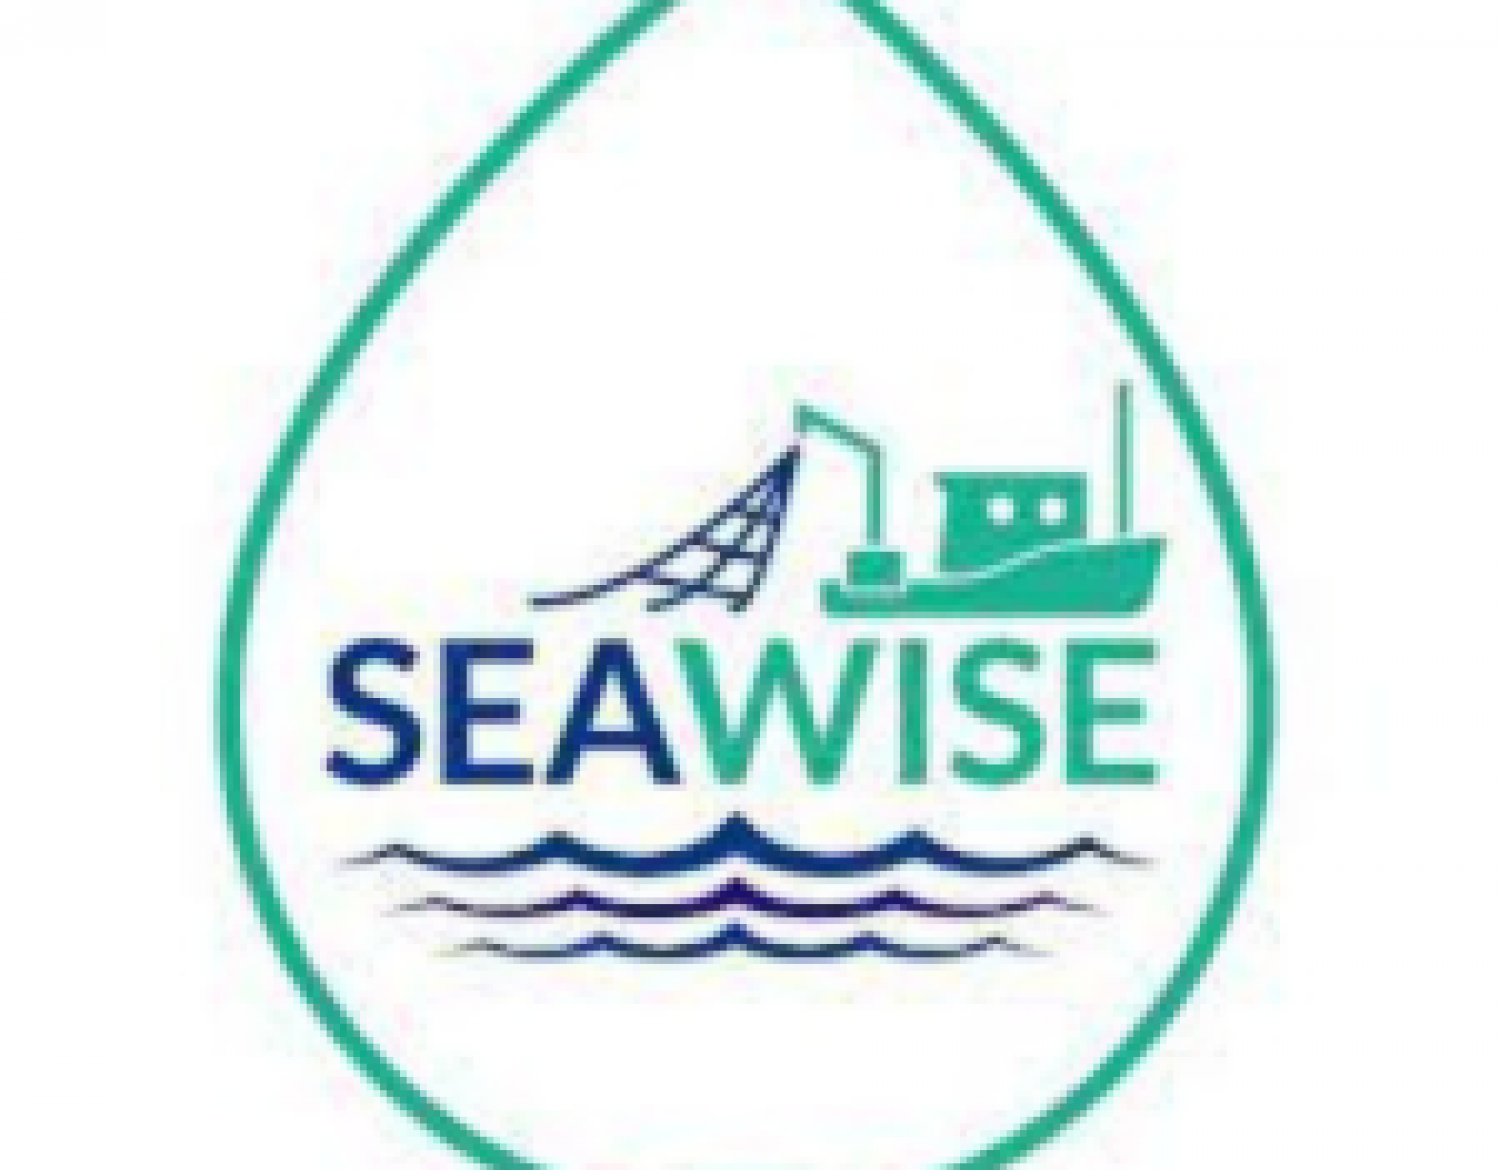 HORIZON Europe project SEAwise | Preparare la strada in Europa per l'efficace attuazione della gestione della pesca basata sugli ecosistemi